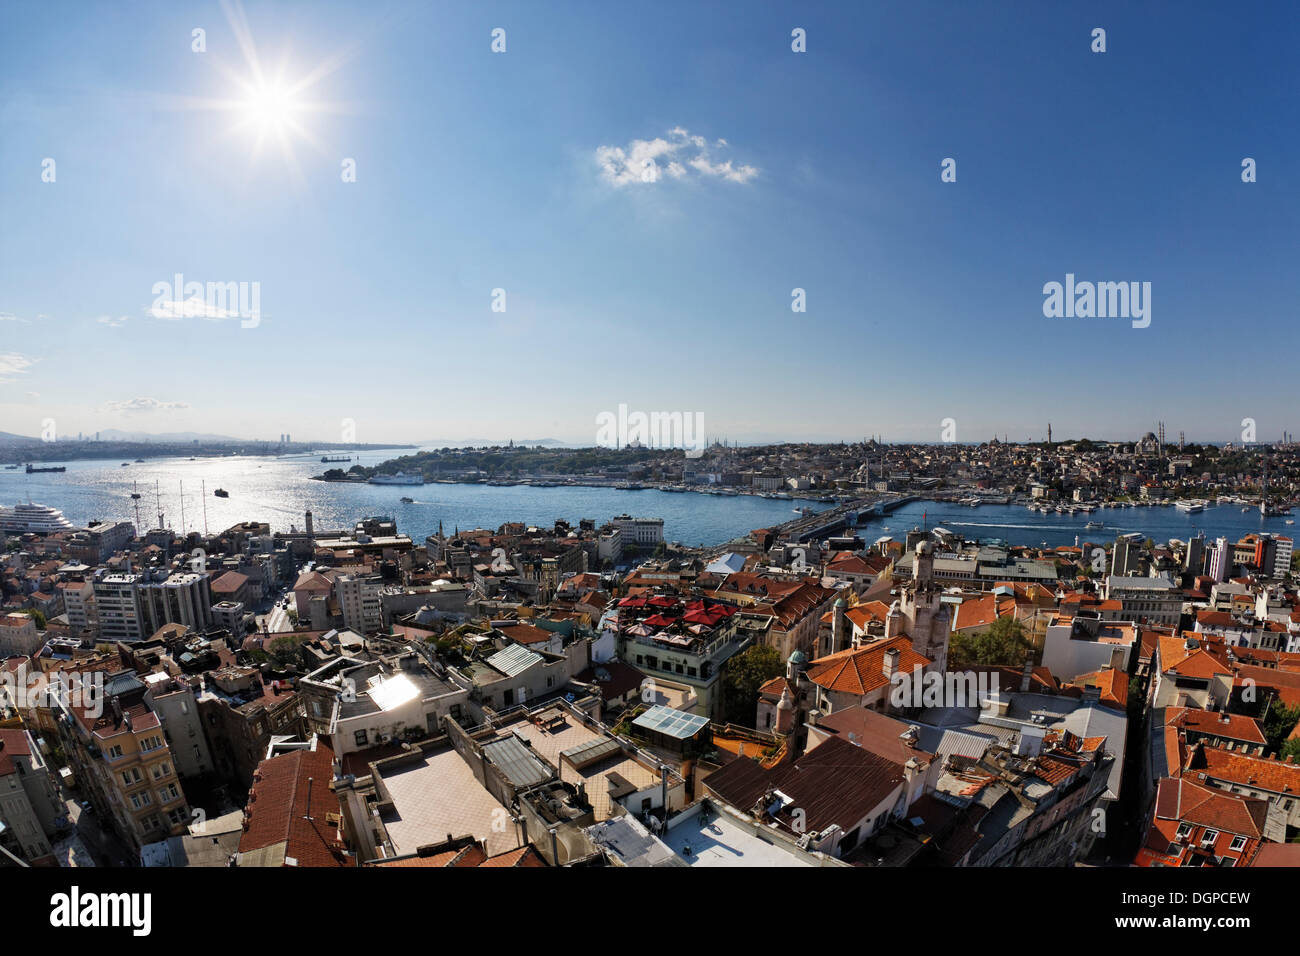 Blick vom Galata-Turm über den Stadtteil Beyoglu, Bosporus und das Goldene Horn, Galata-Brücke und Sultanahmet hinten Stockfoto